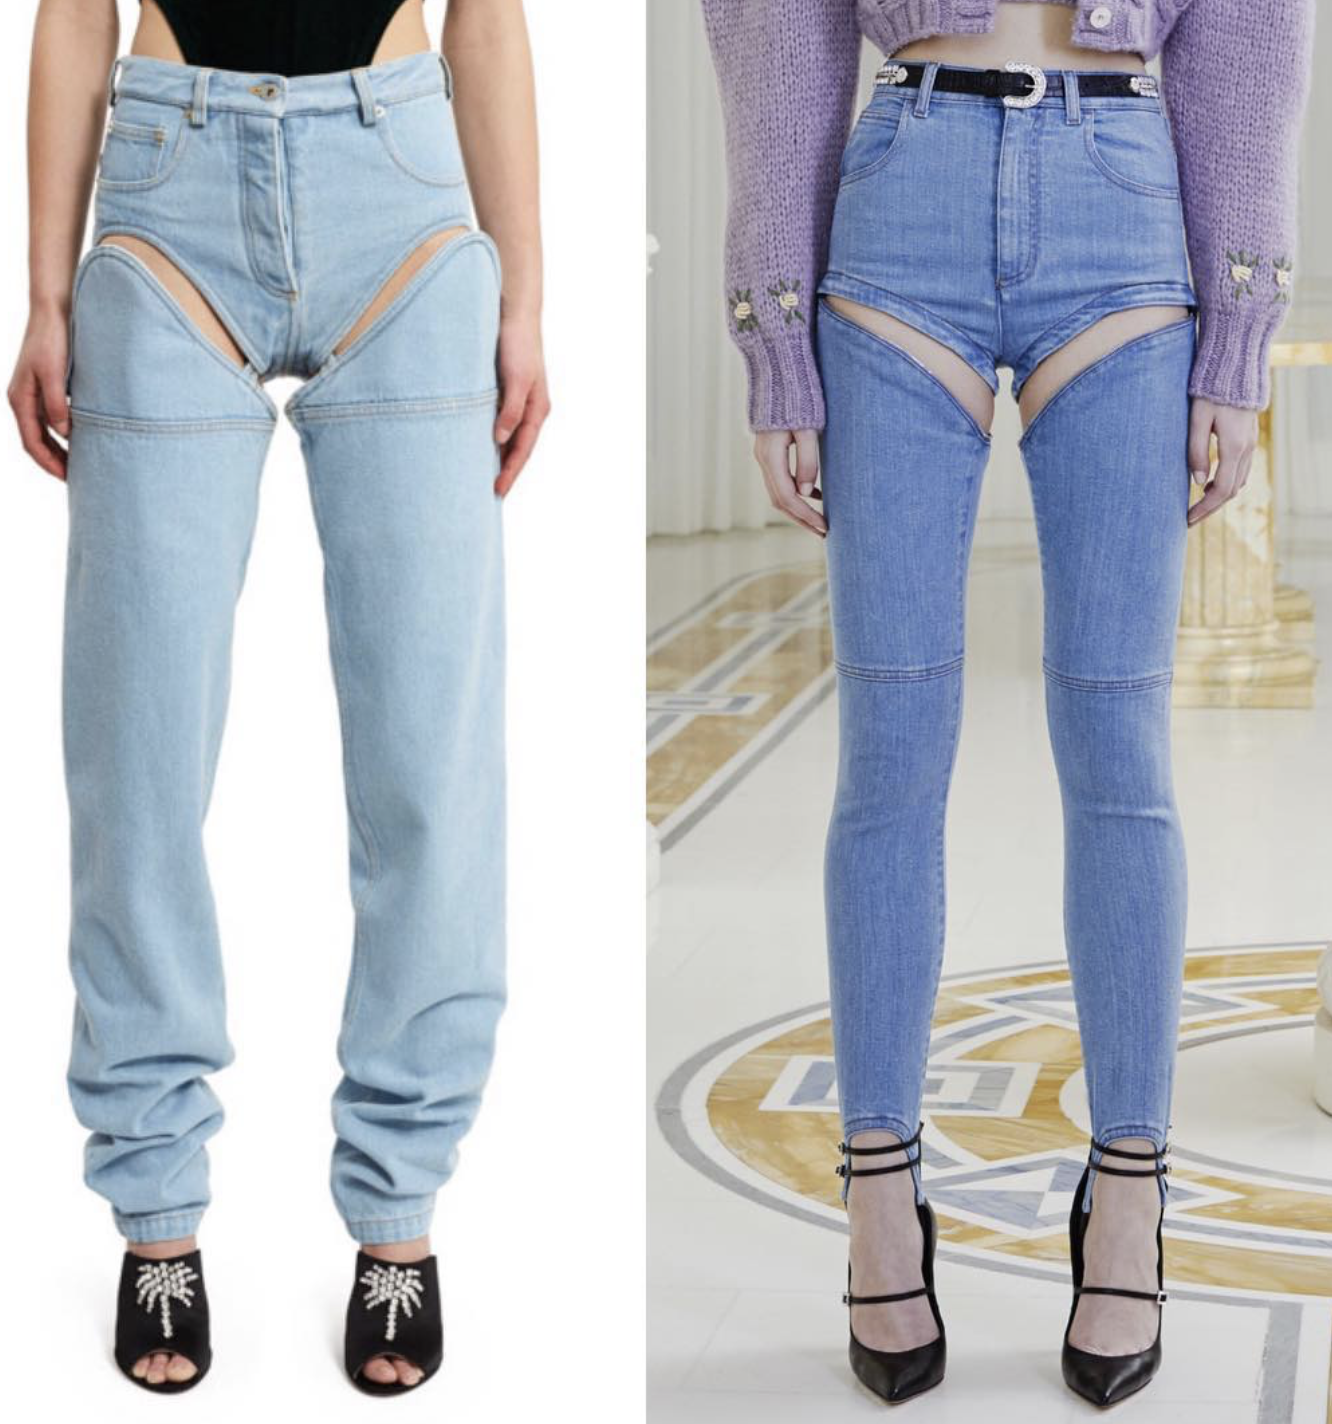 Дизайнери вигадали незручний фасон джинсів